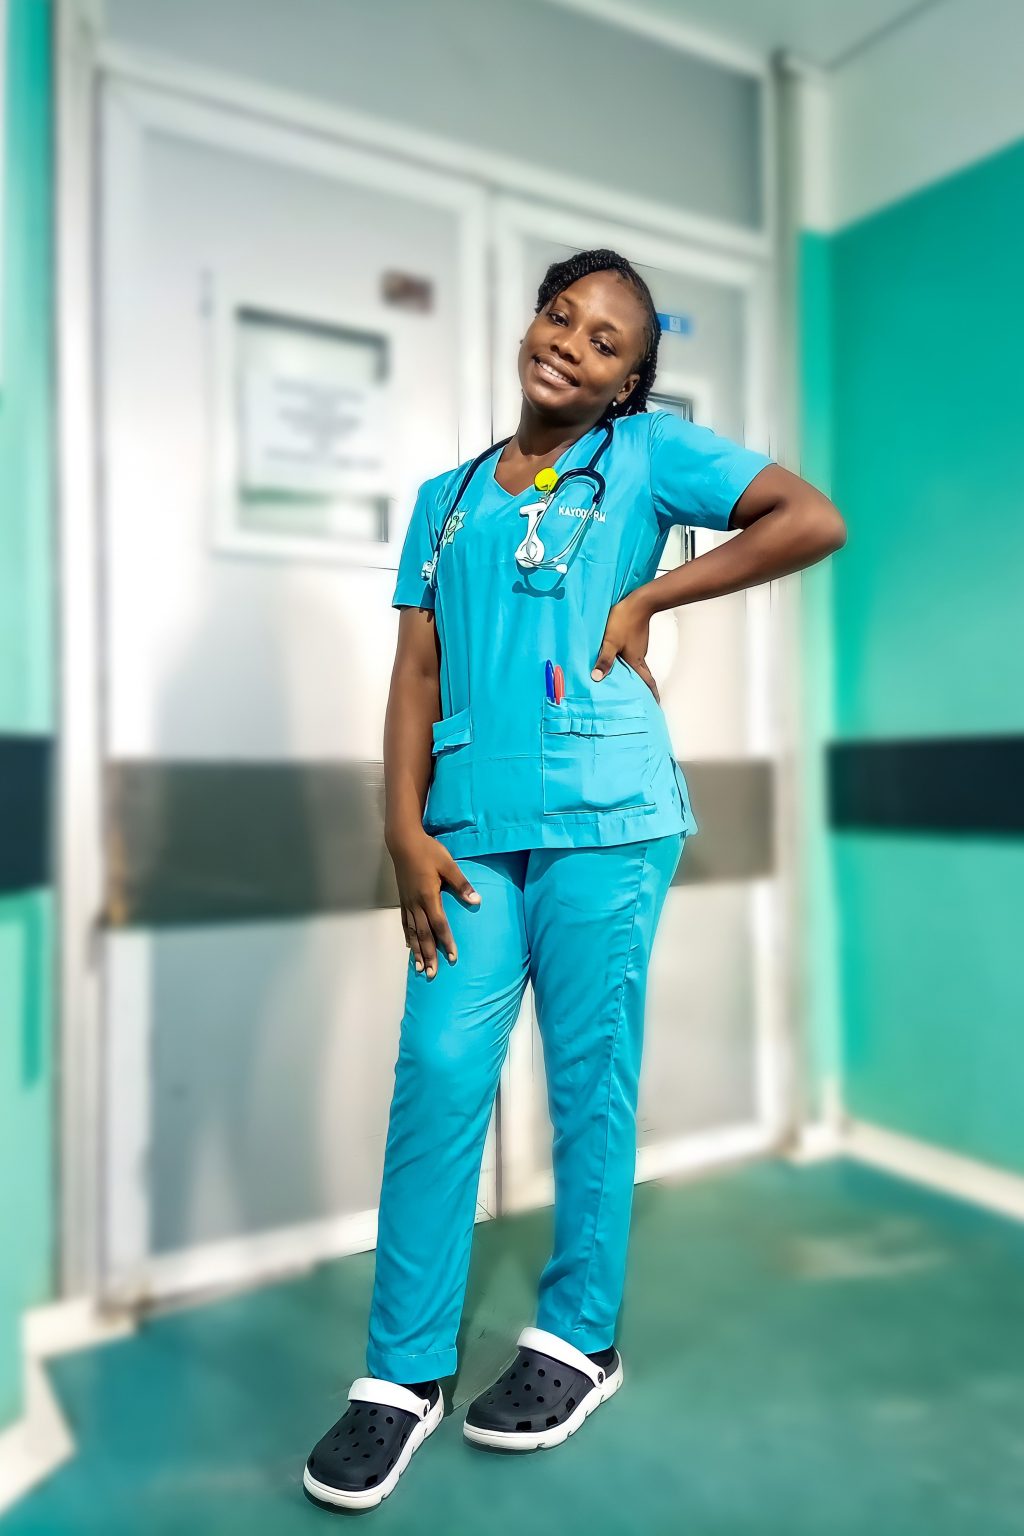 nigeria nurses dating site